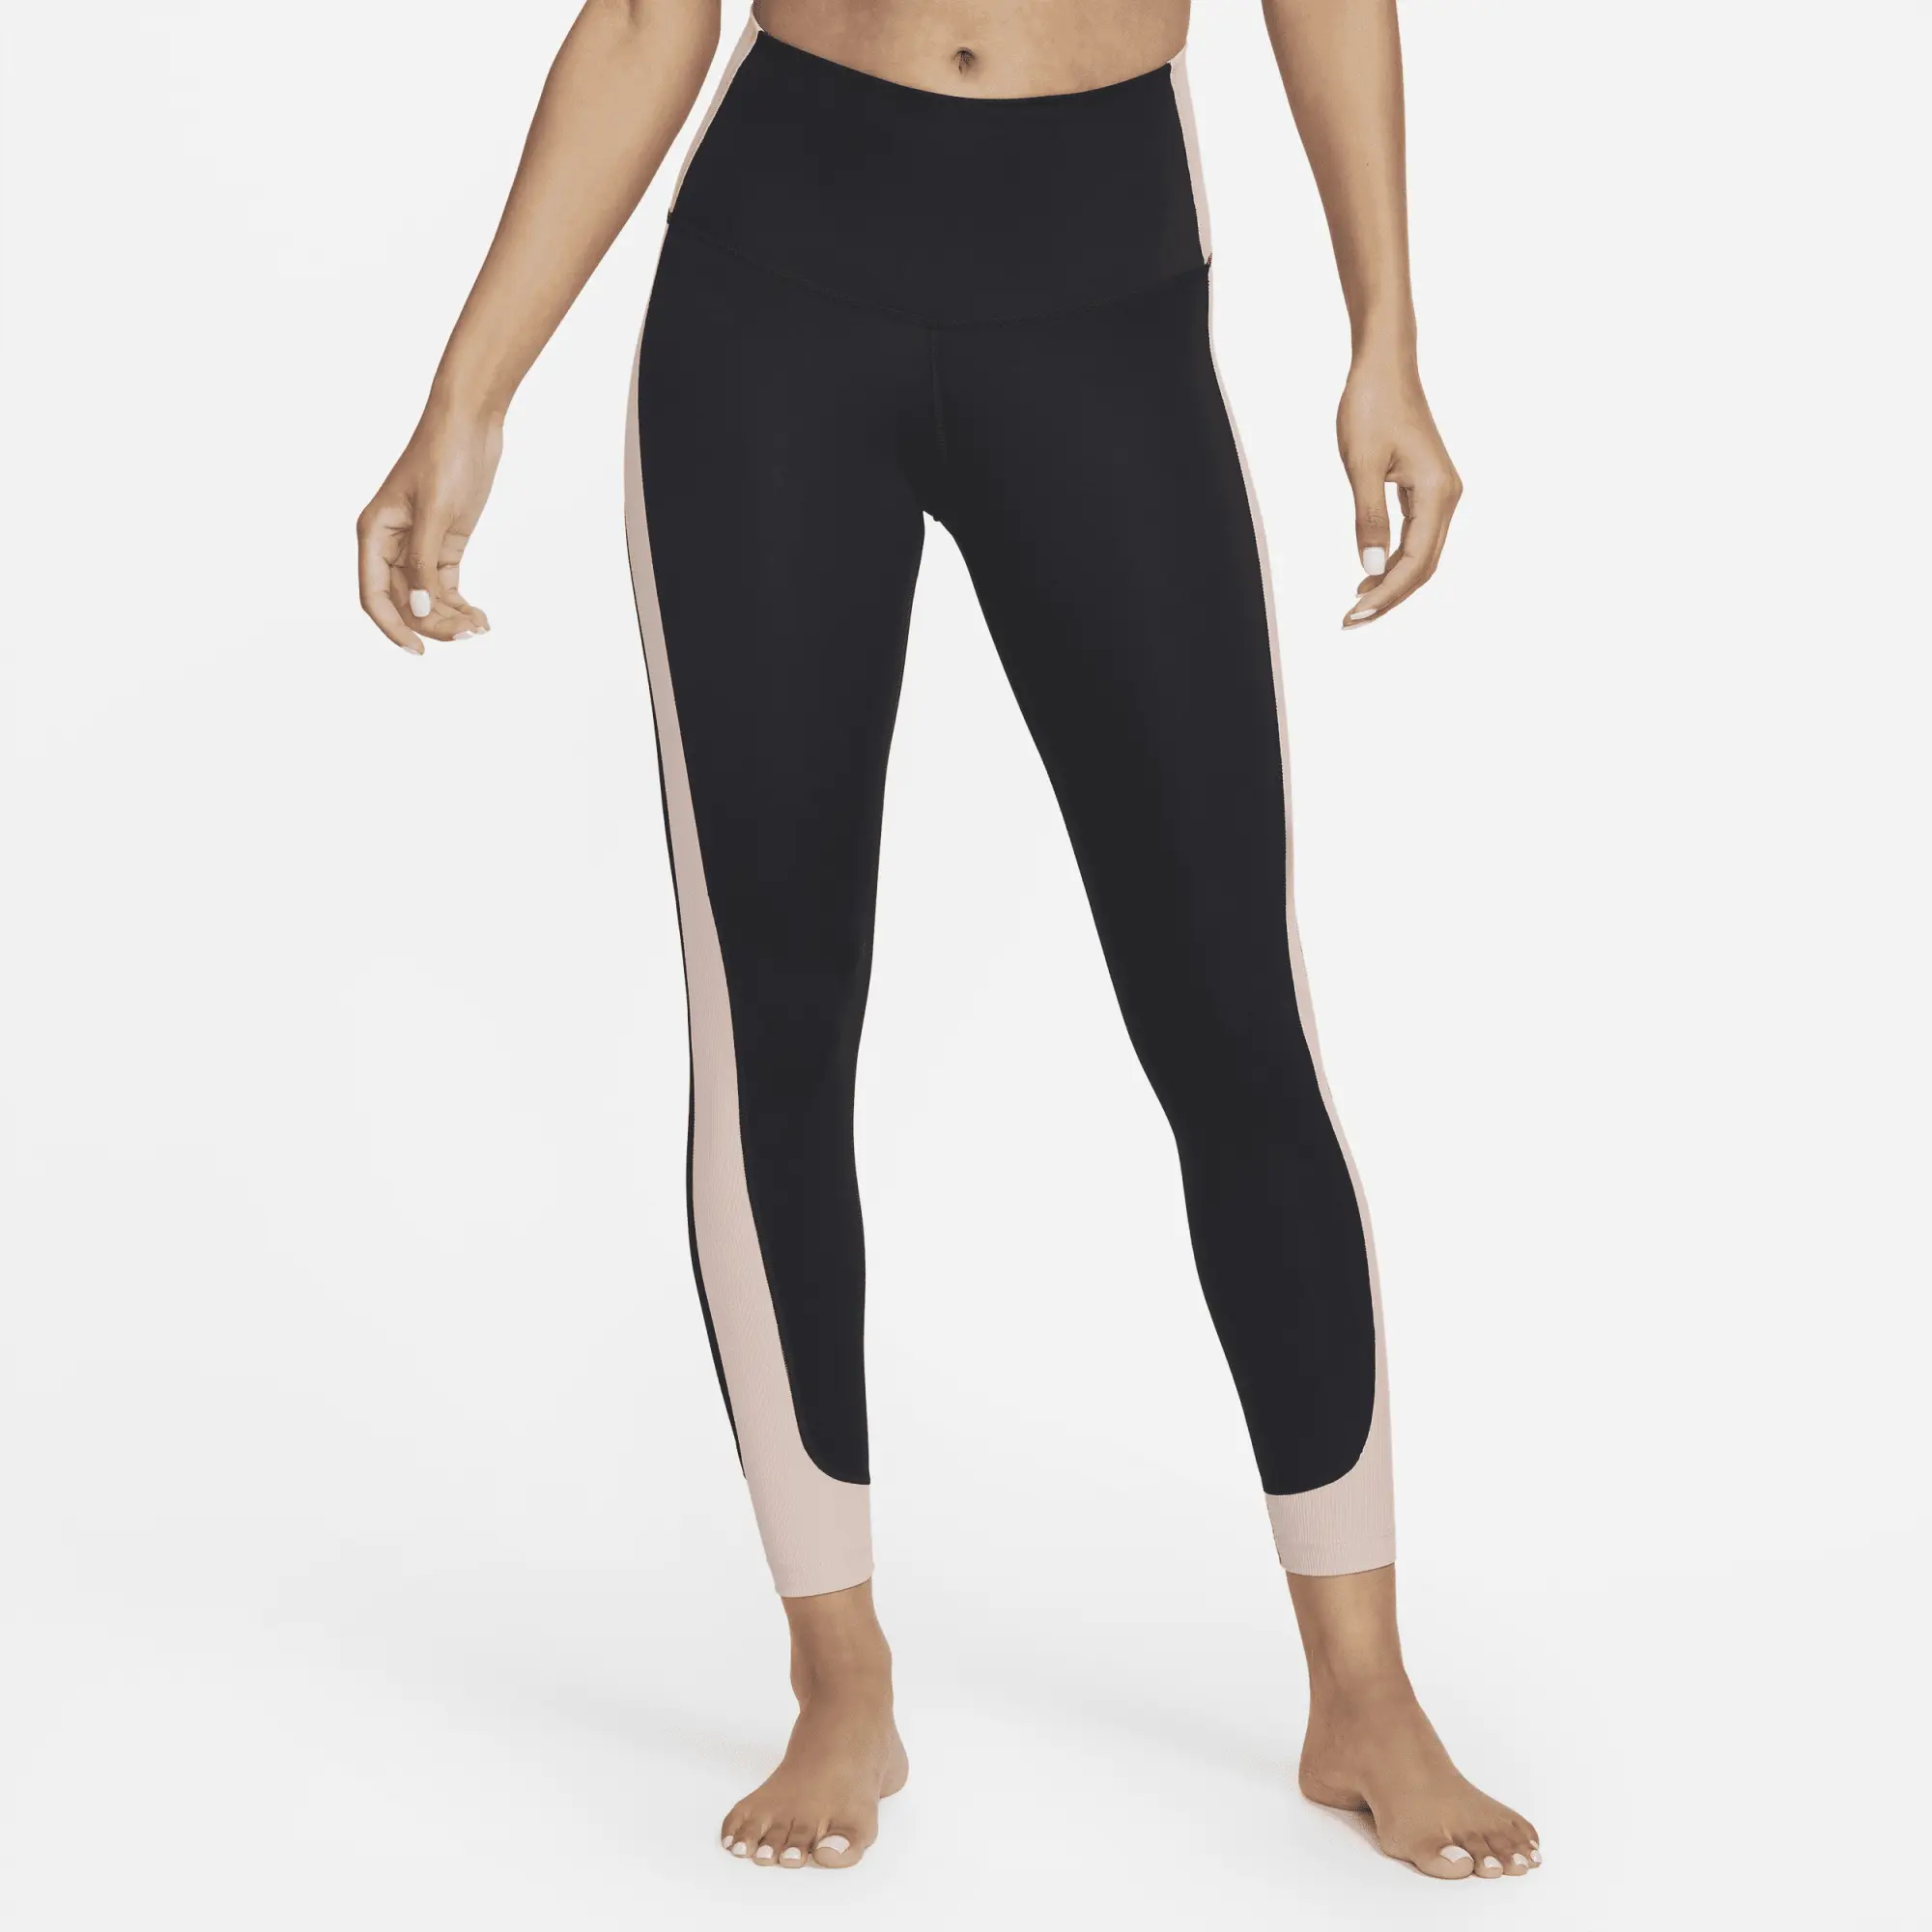 Nike Yoga Women's High-Waisted 7/8 Ribbed-Panel Leggings - Black